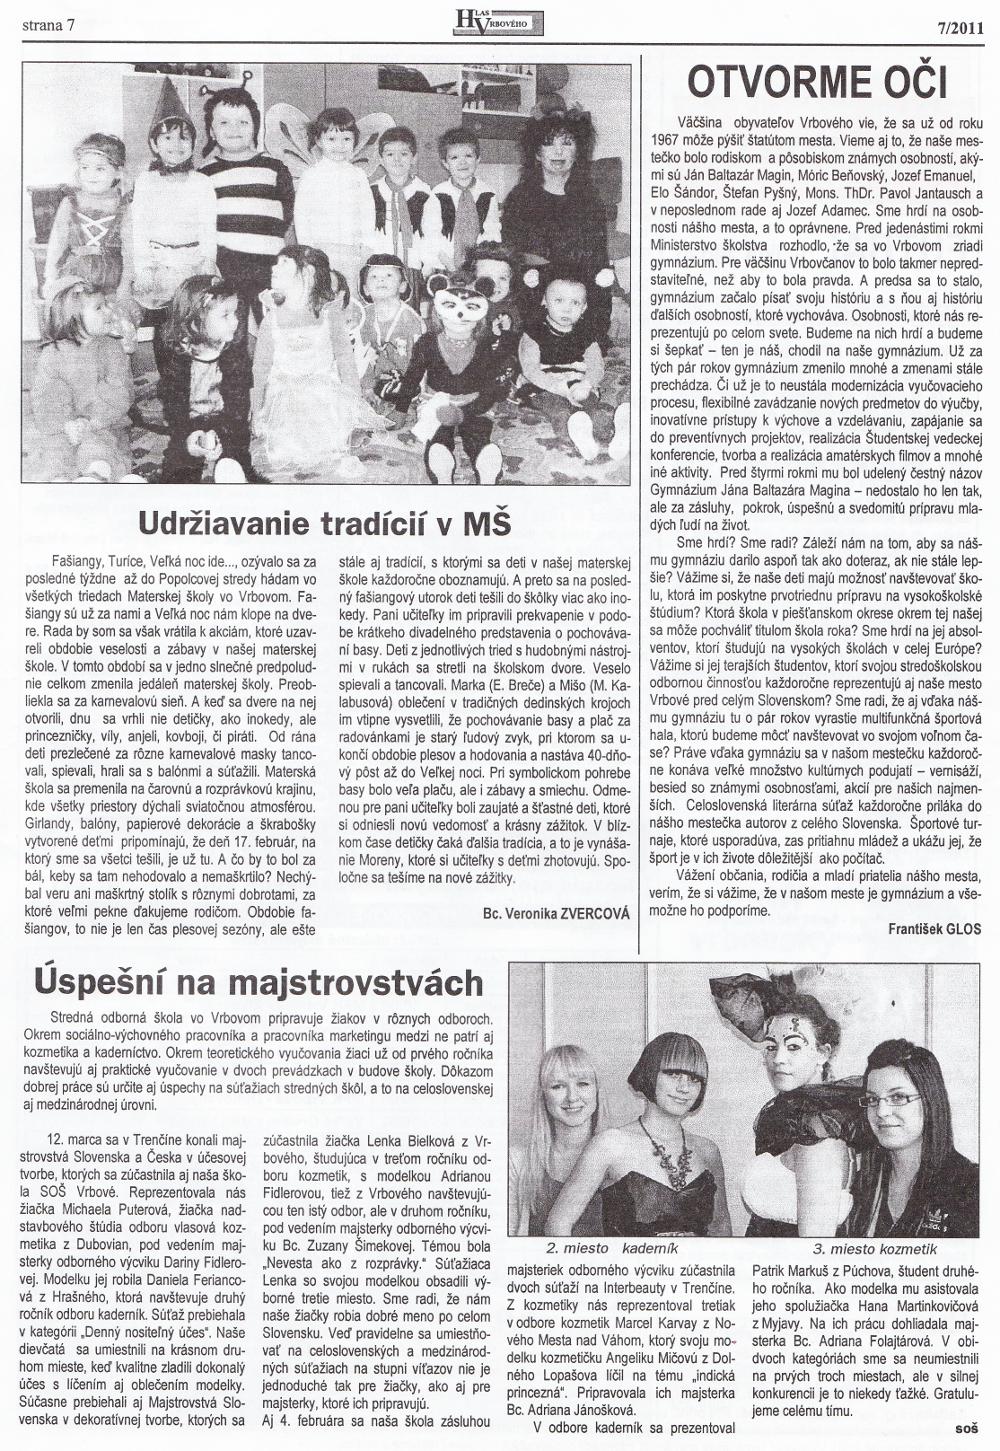 Hlas Vrbového 06/2011, strana 7